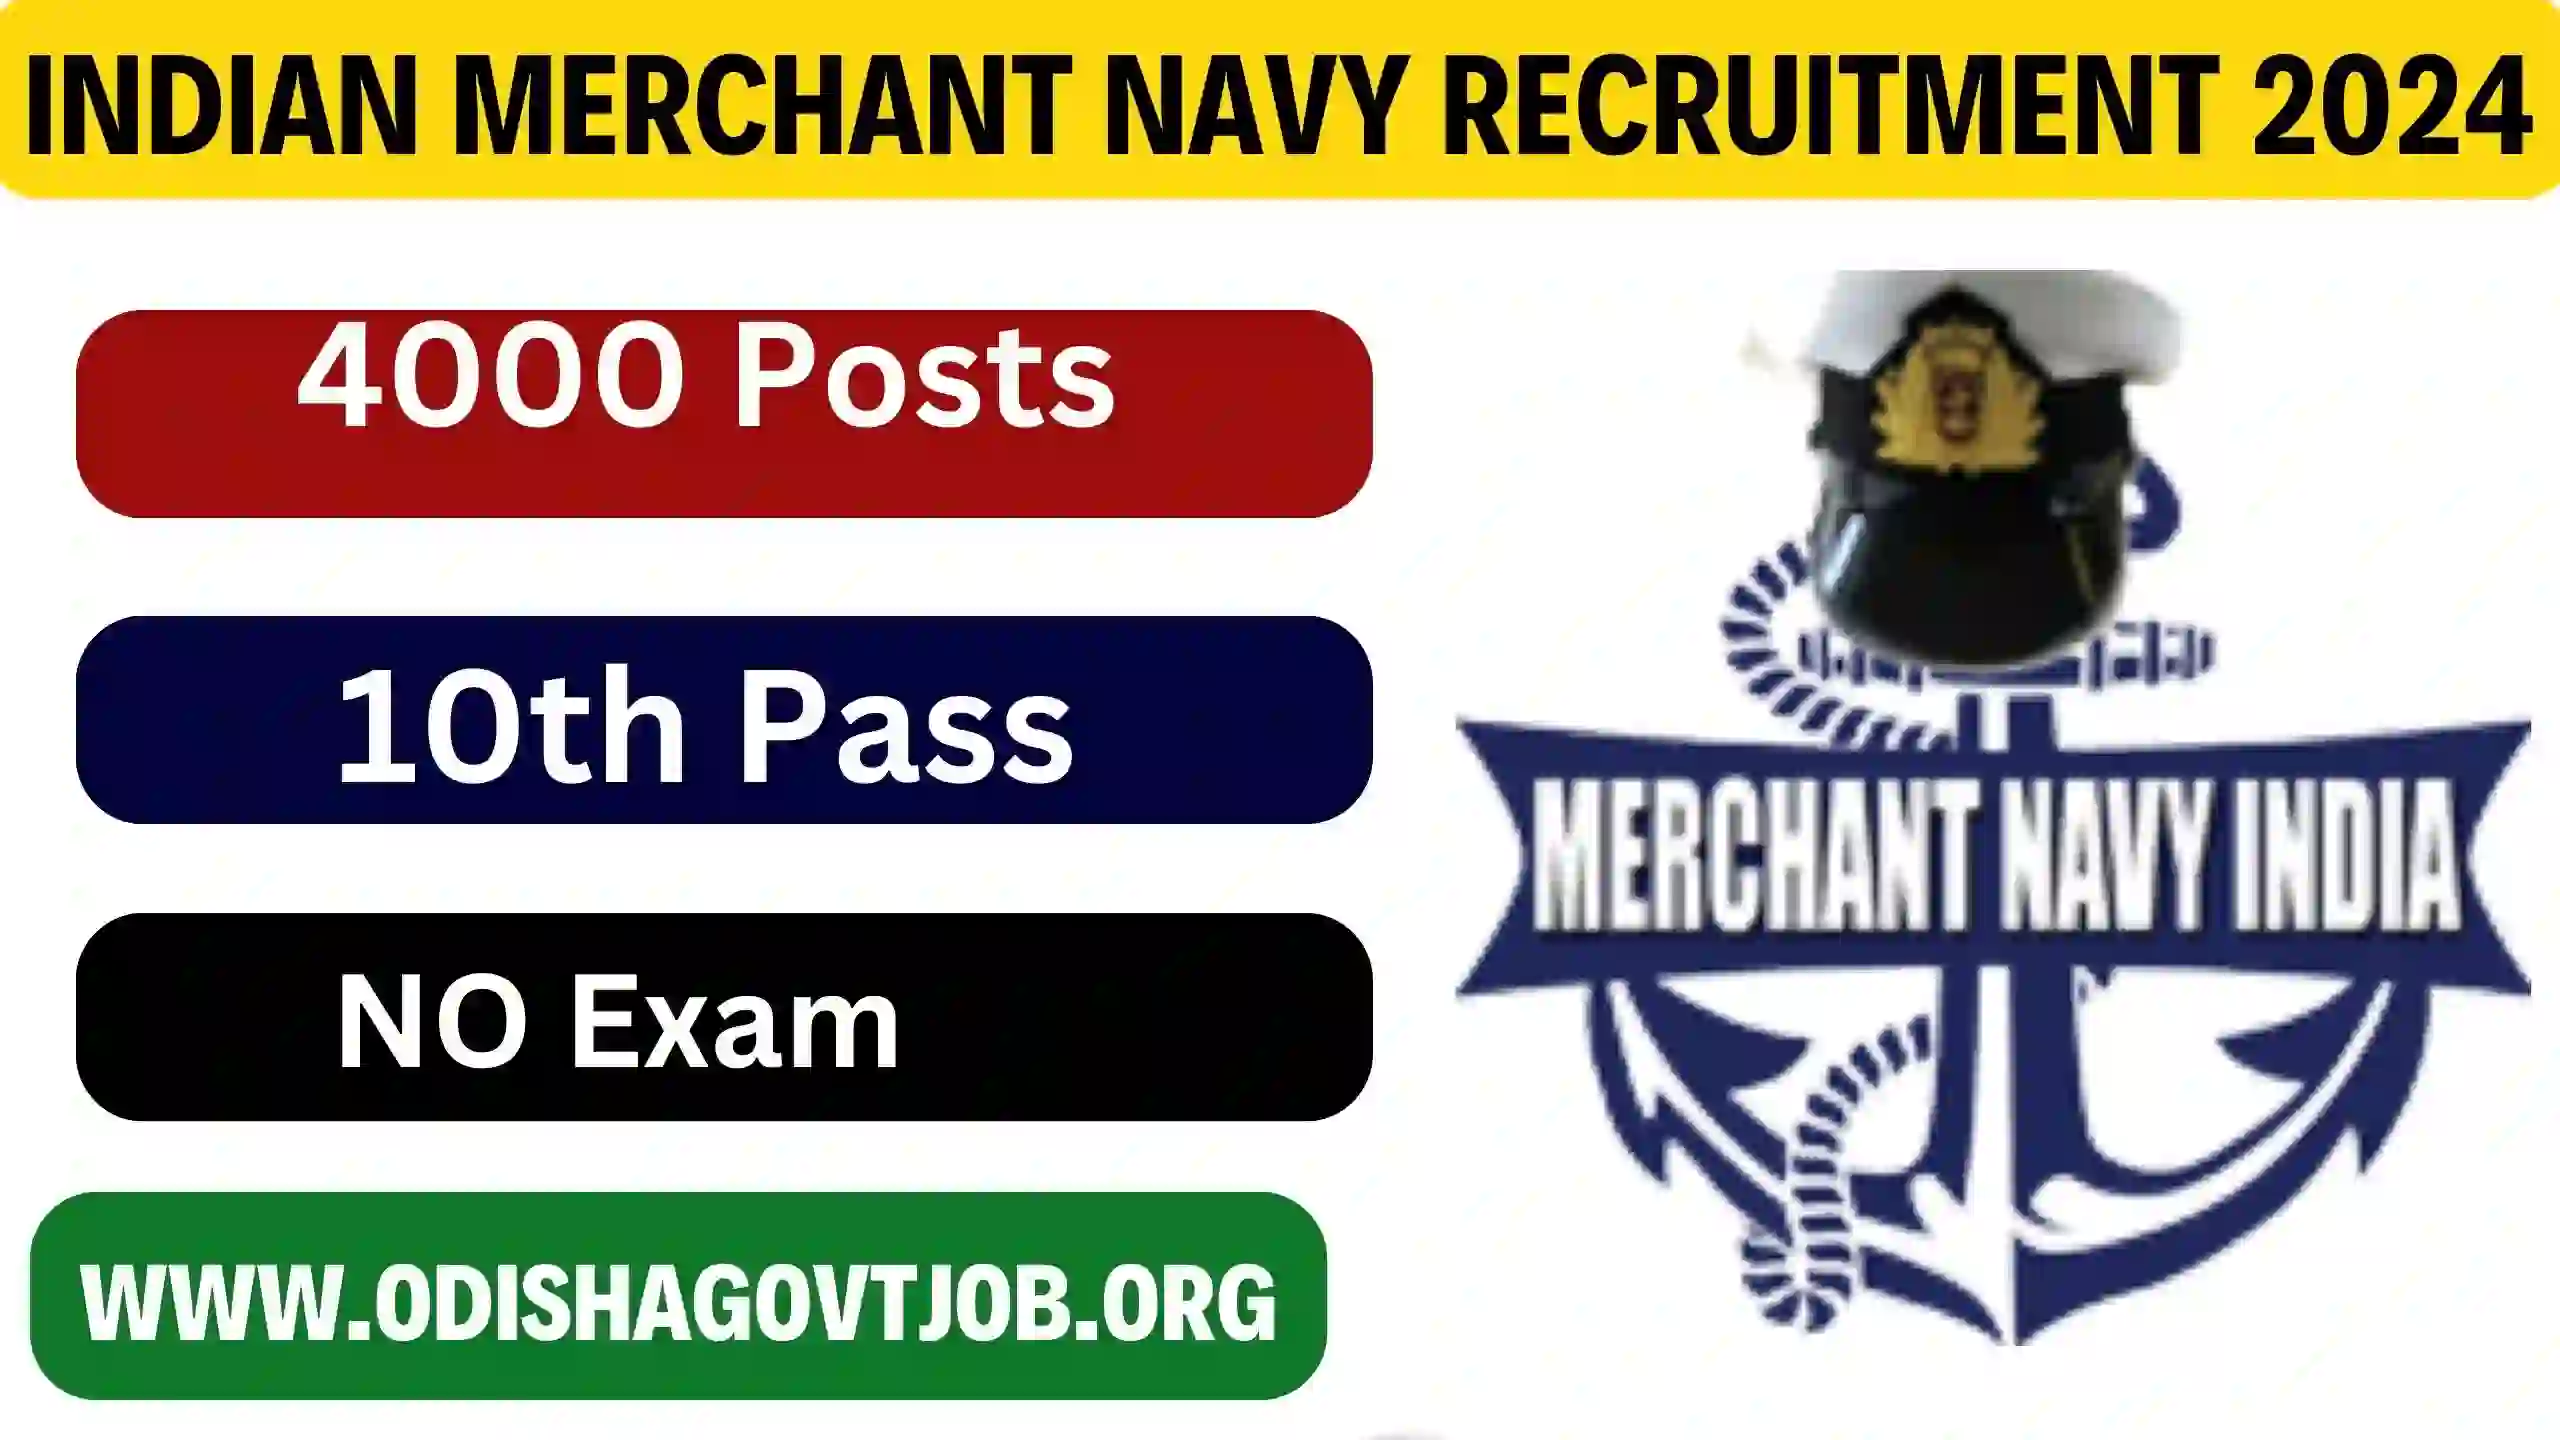 Indian Merchant Navy Recruitment 2024